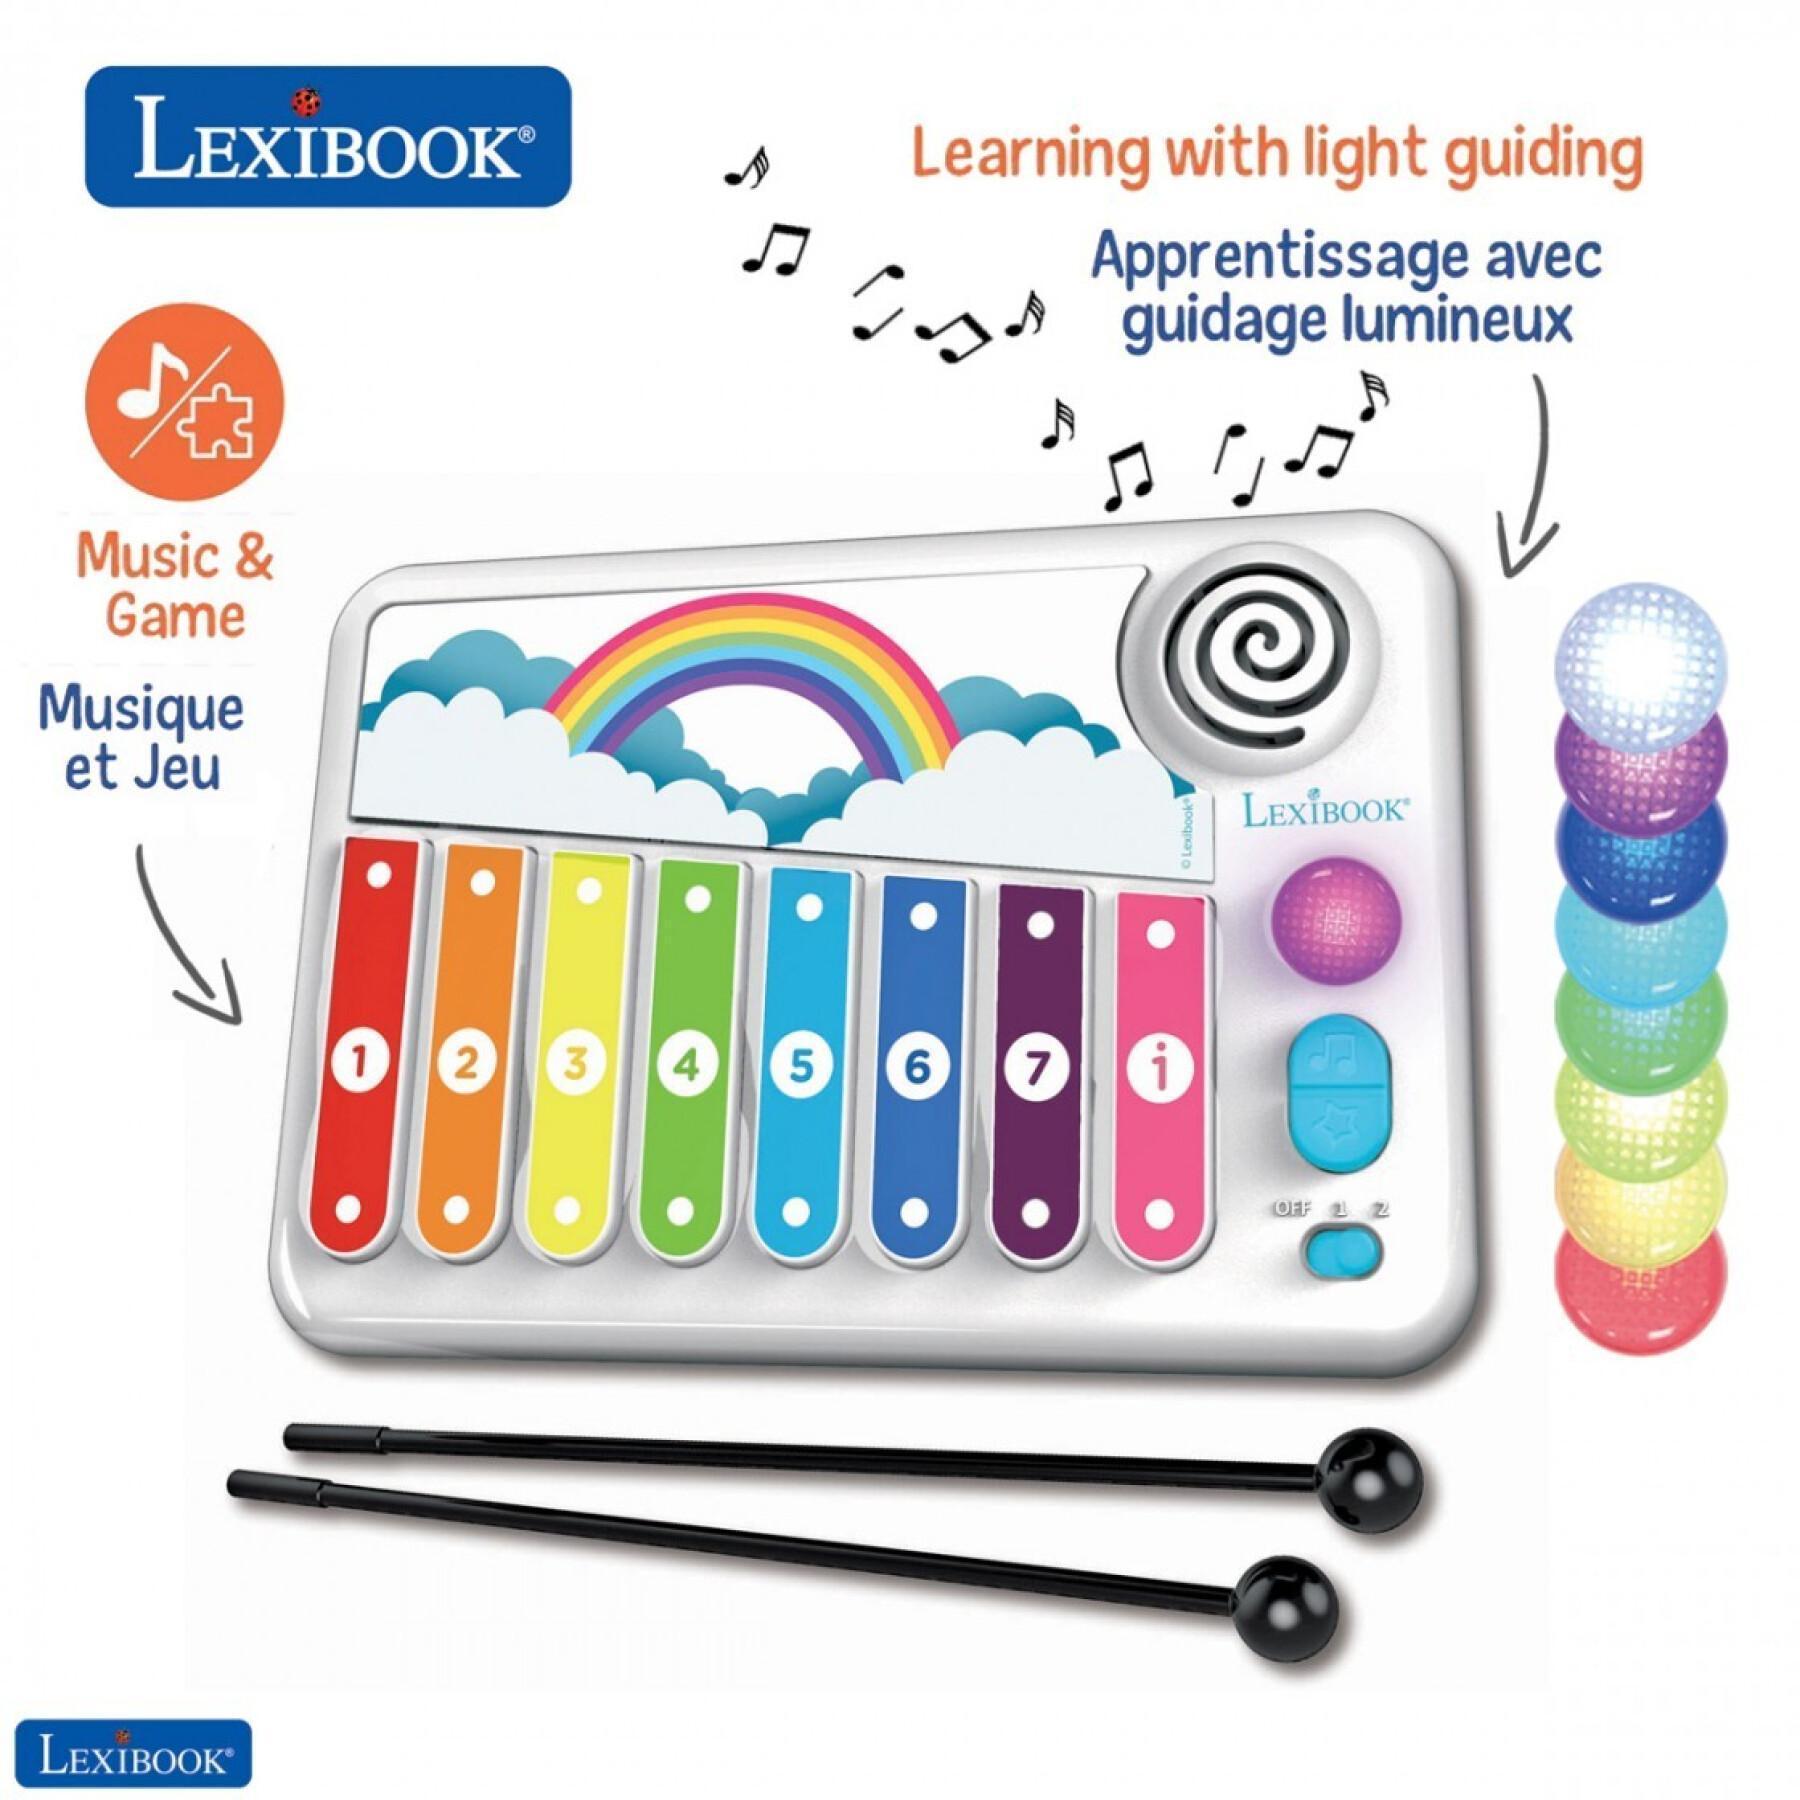 Xilofono con apprendimento musicale illuminato Lexibook